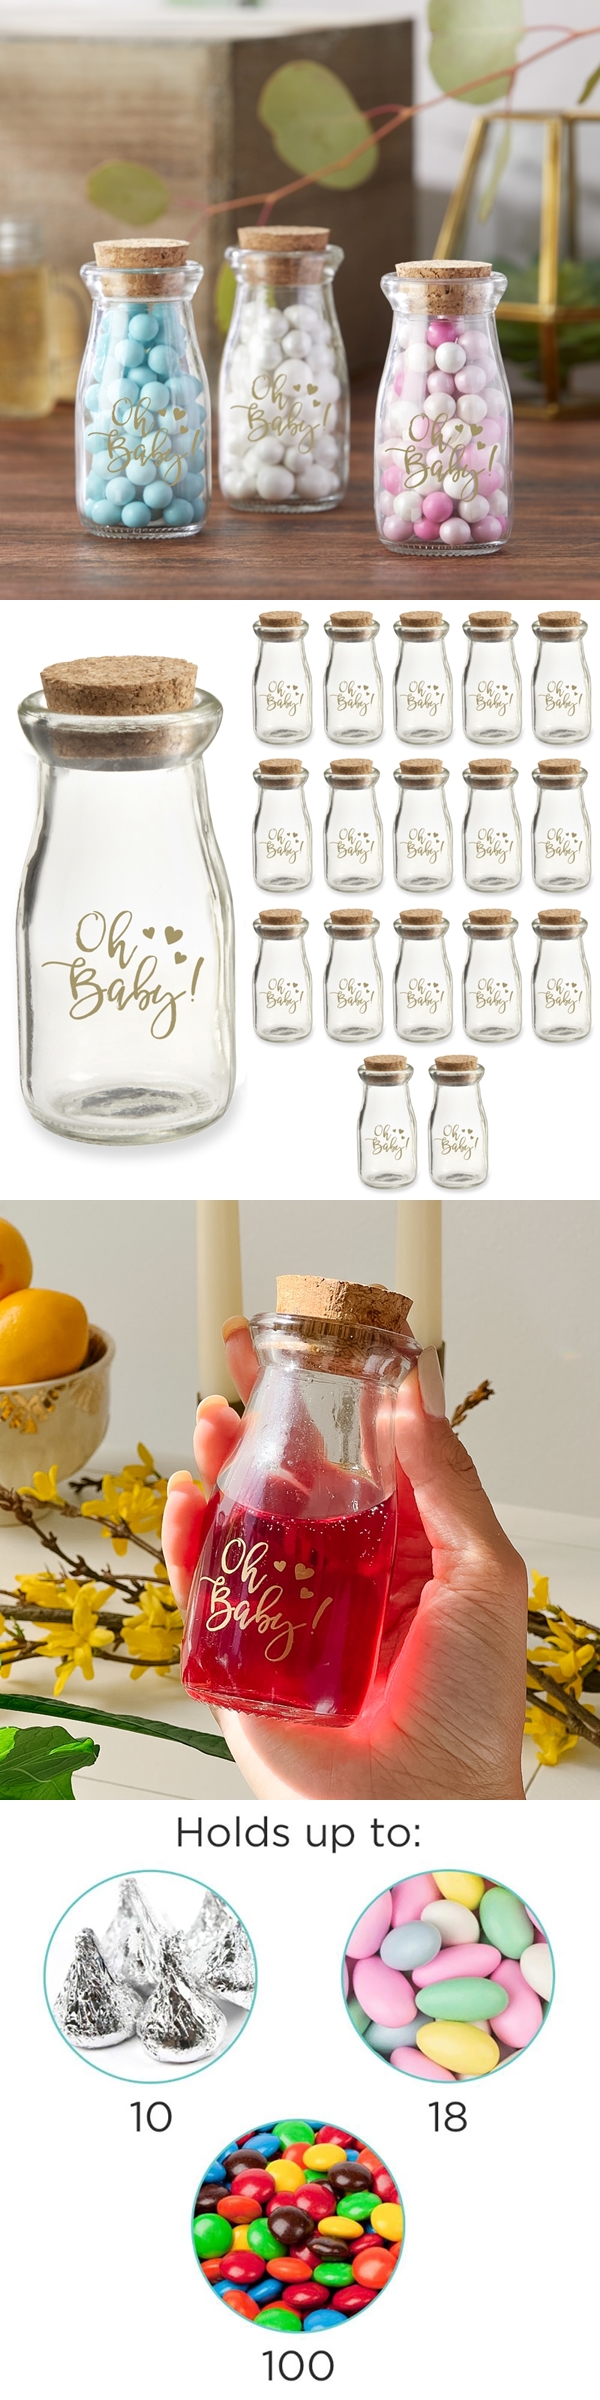 Vintage Milk Bottle Jars with Adorable 'Oh Baby!' Design (Set of 18)